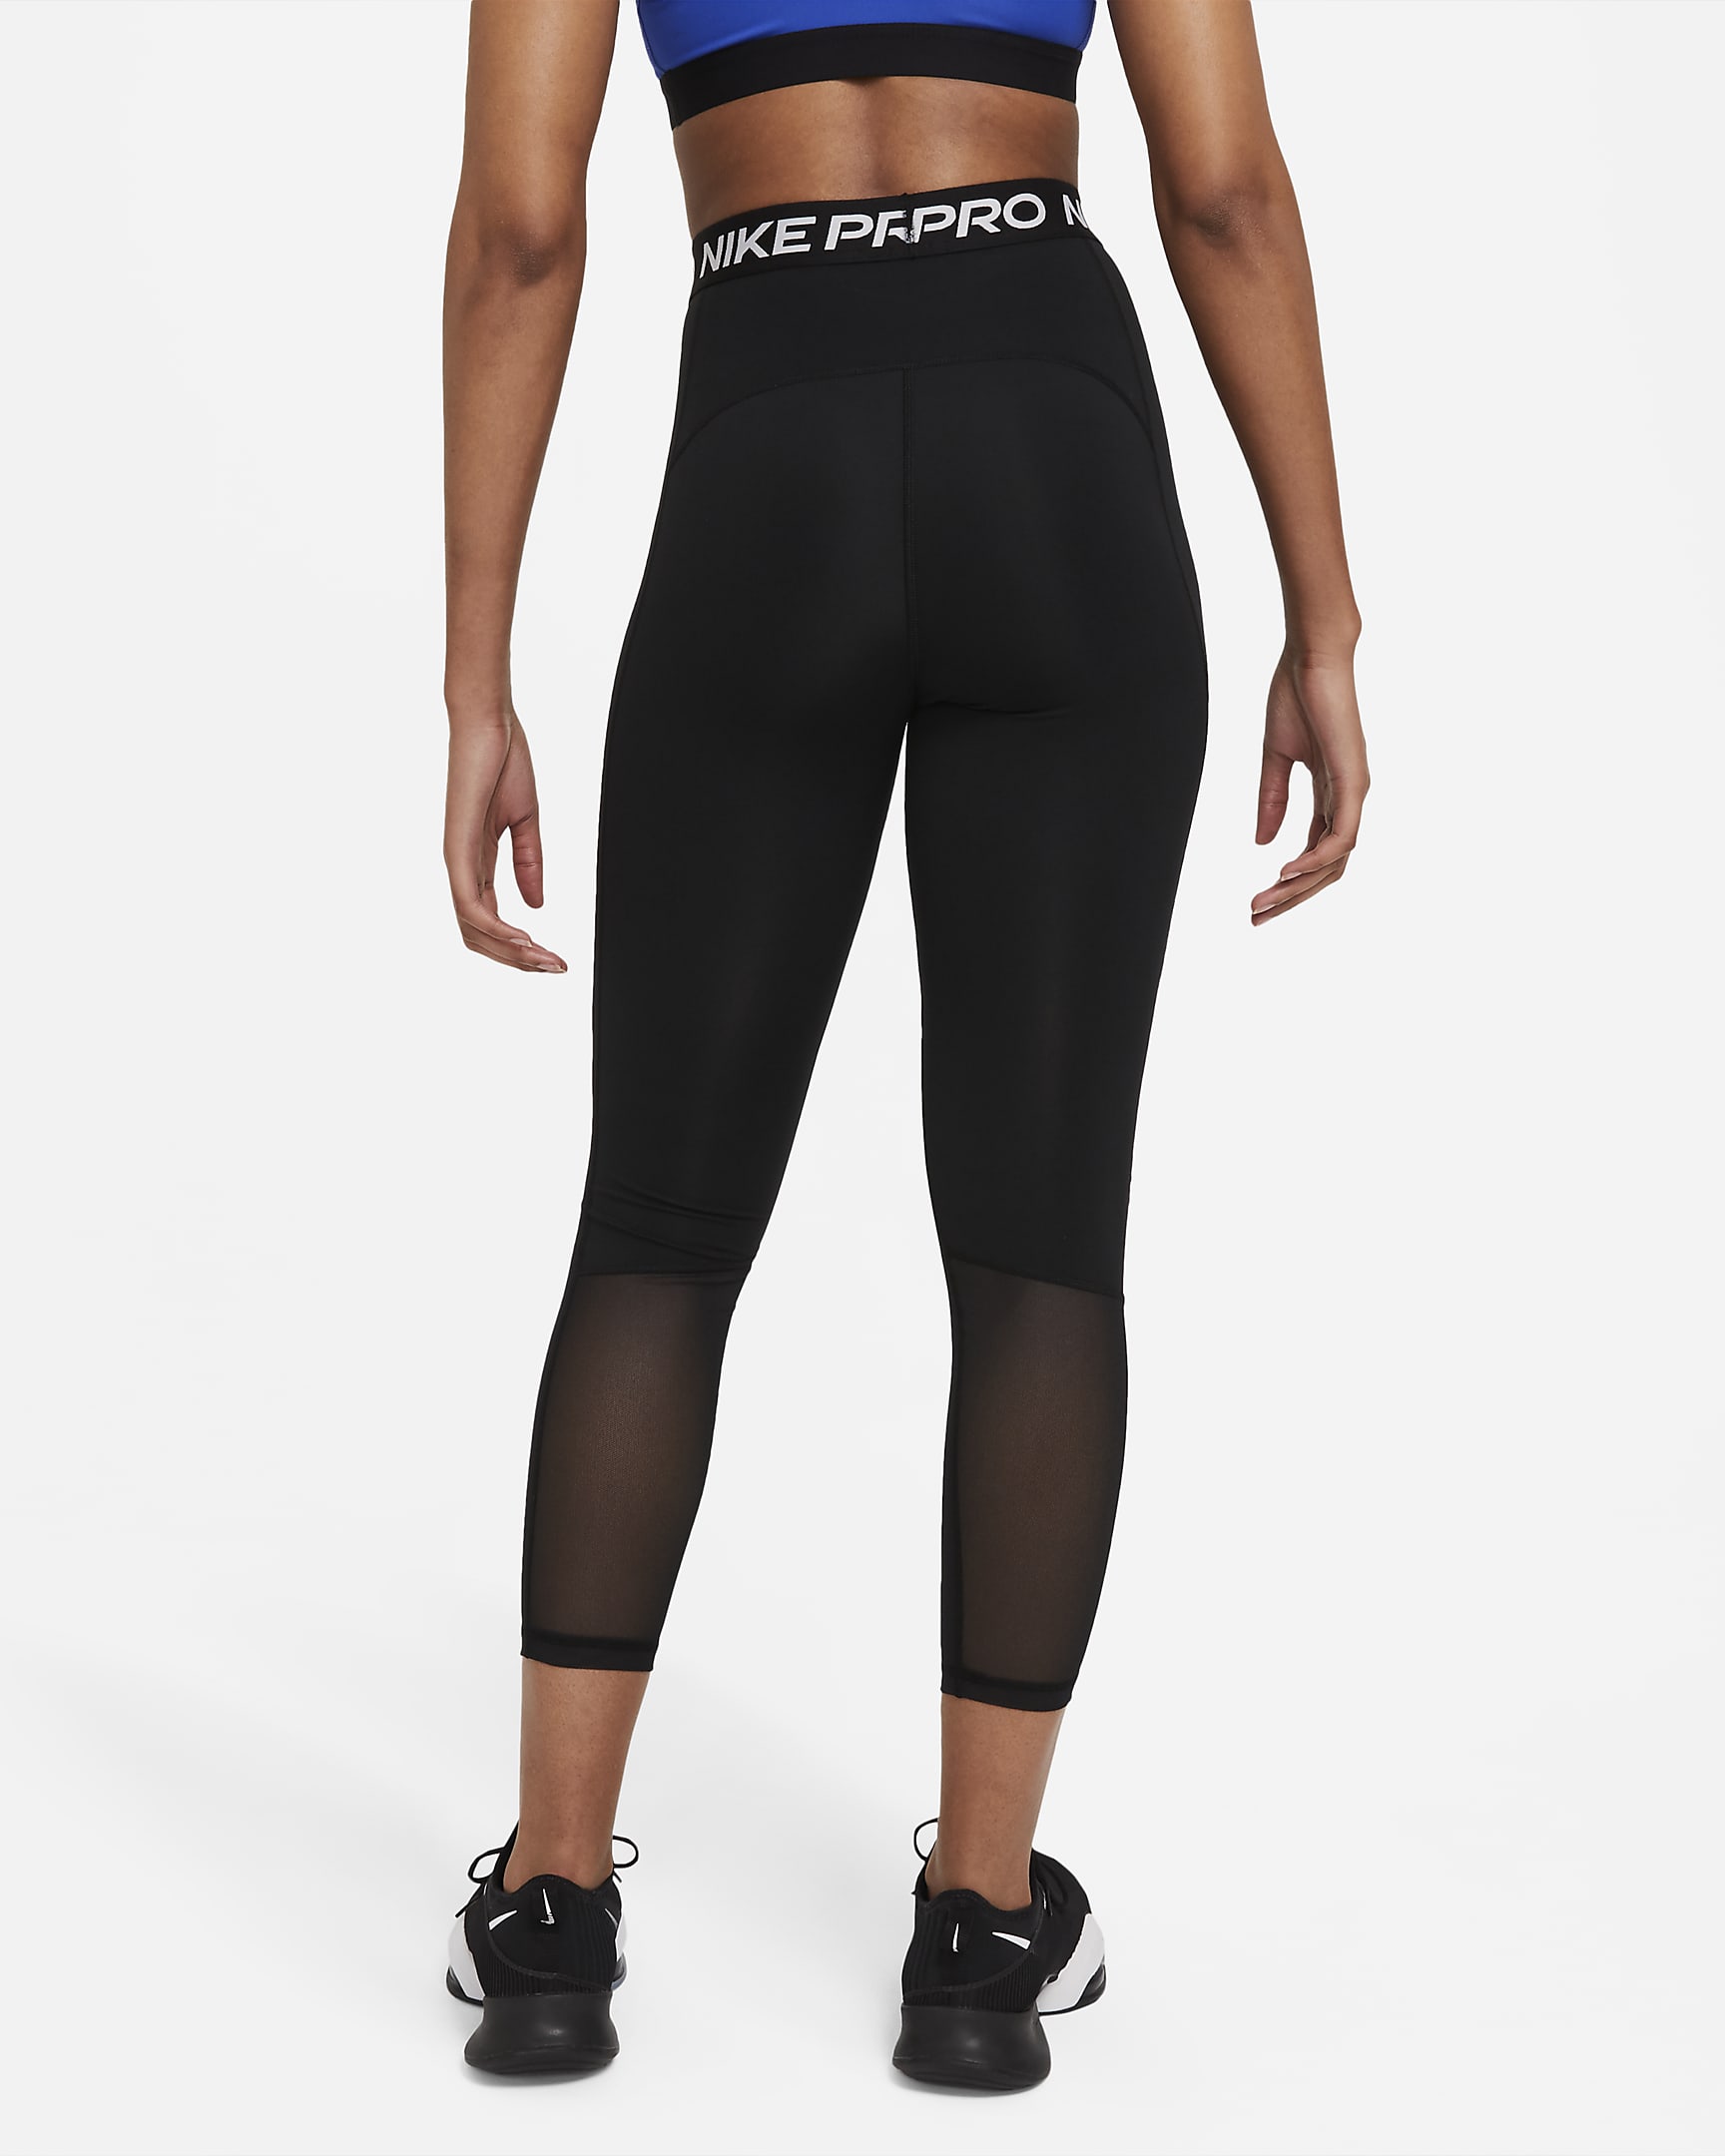 Nike Pro 365 Women's High-Waisted 7/8 Mesh Panel Leggings - Black/White